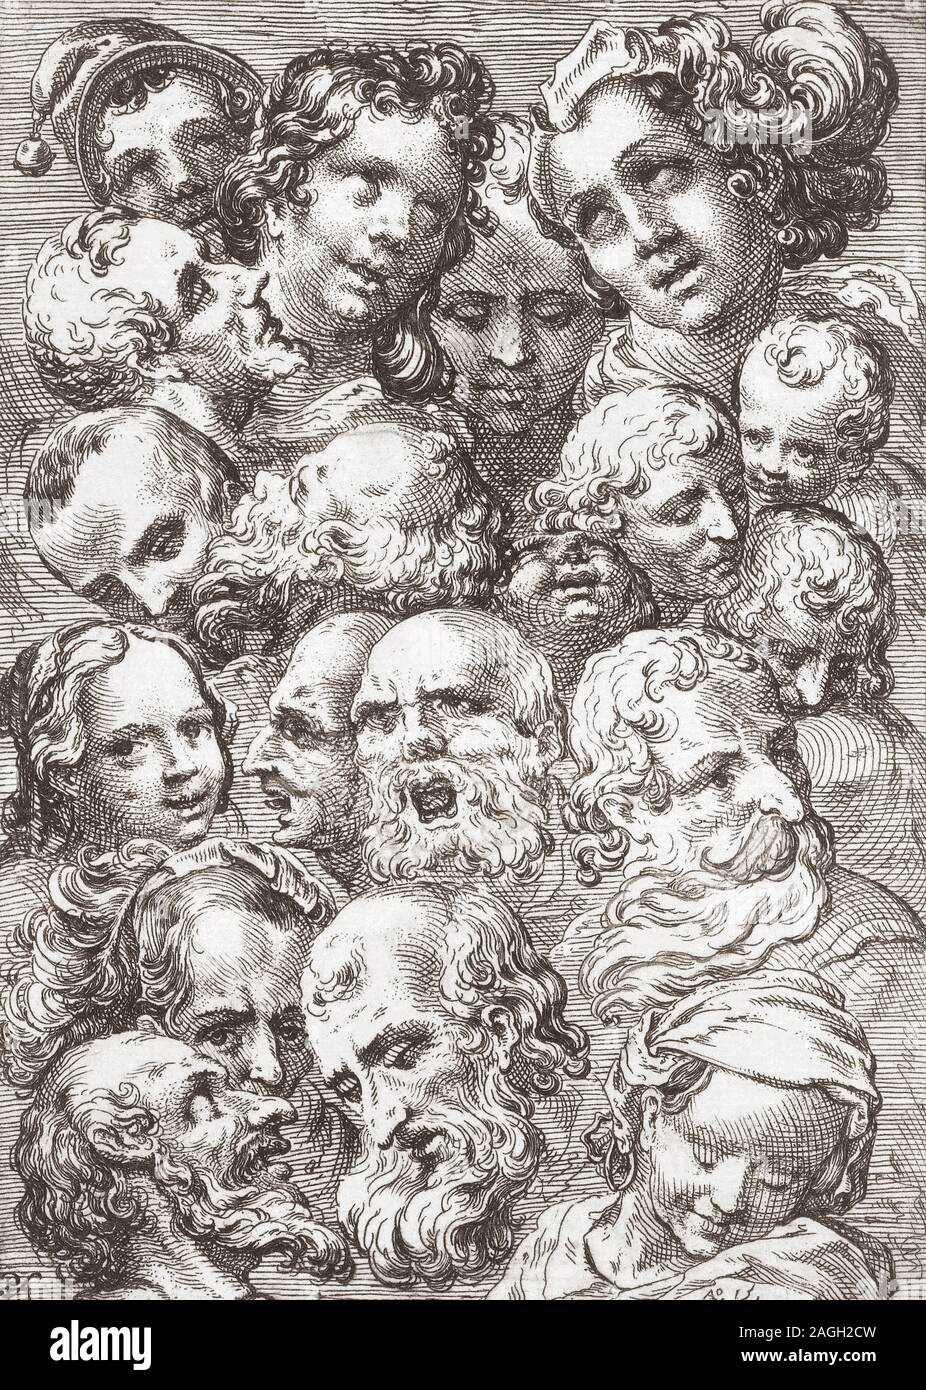 Eine Studie von 19 Staats- und Regierungschefs von Männern, Frauen und Kindern. Nach einem 17. Jahrhundert Drucken des holländischen Malers Pieter van Feddes Harlingen, 1586 - 1623. Stockfoto